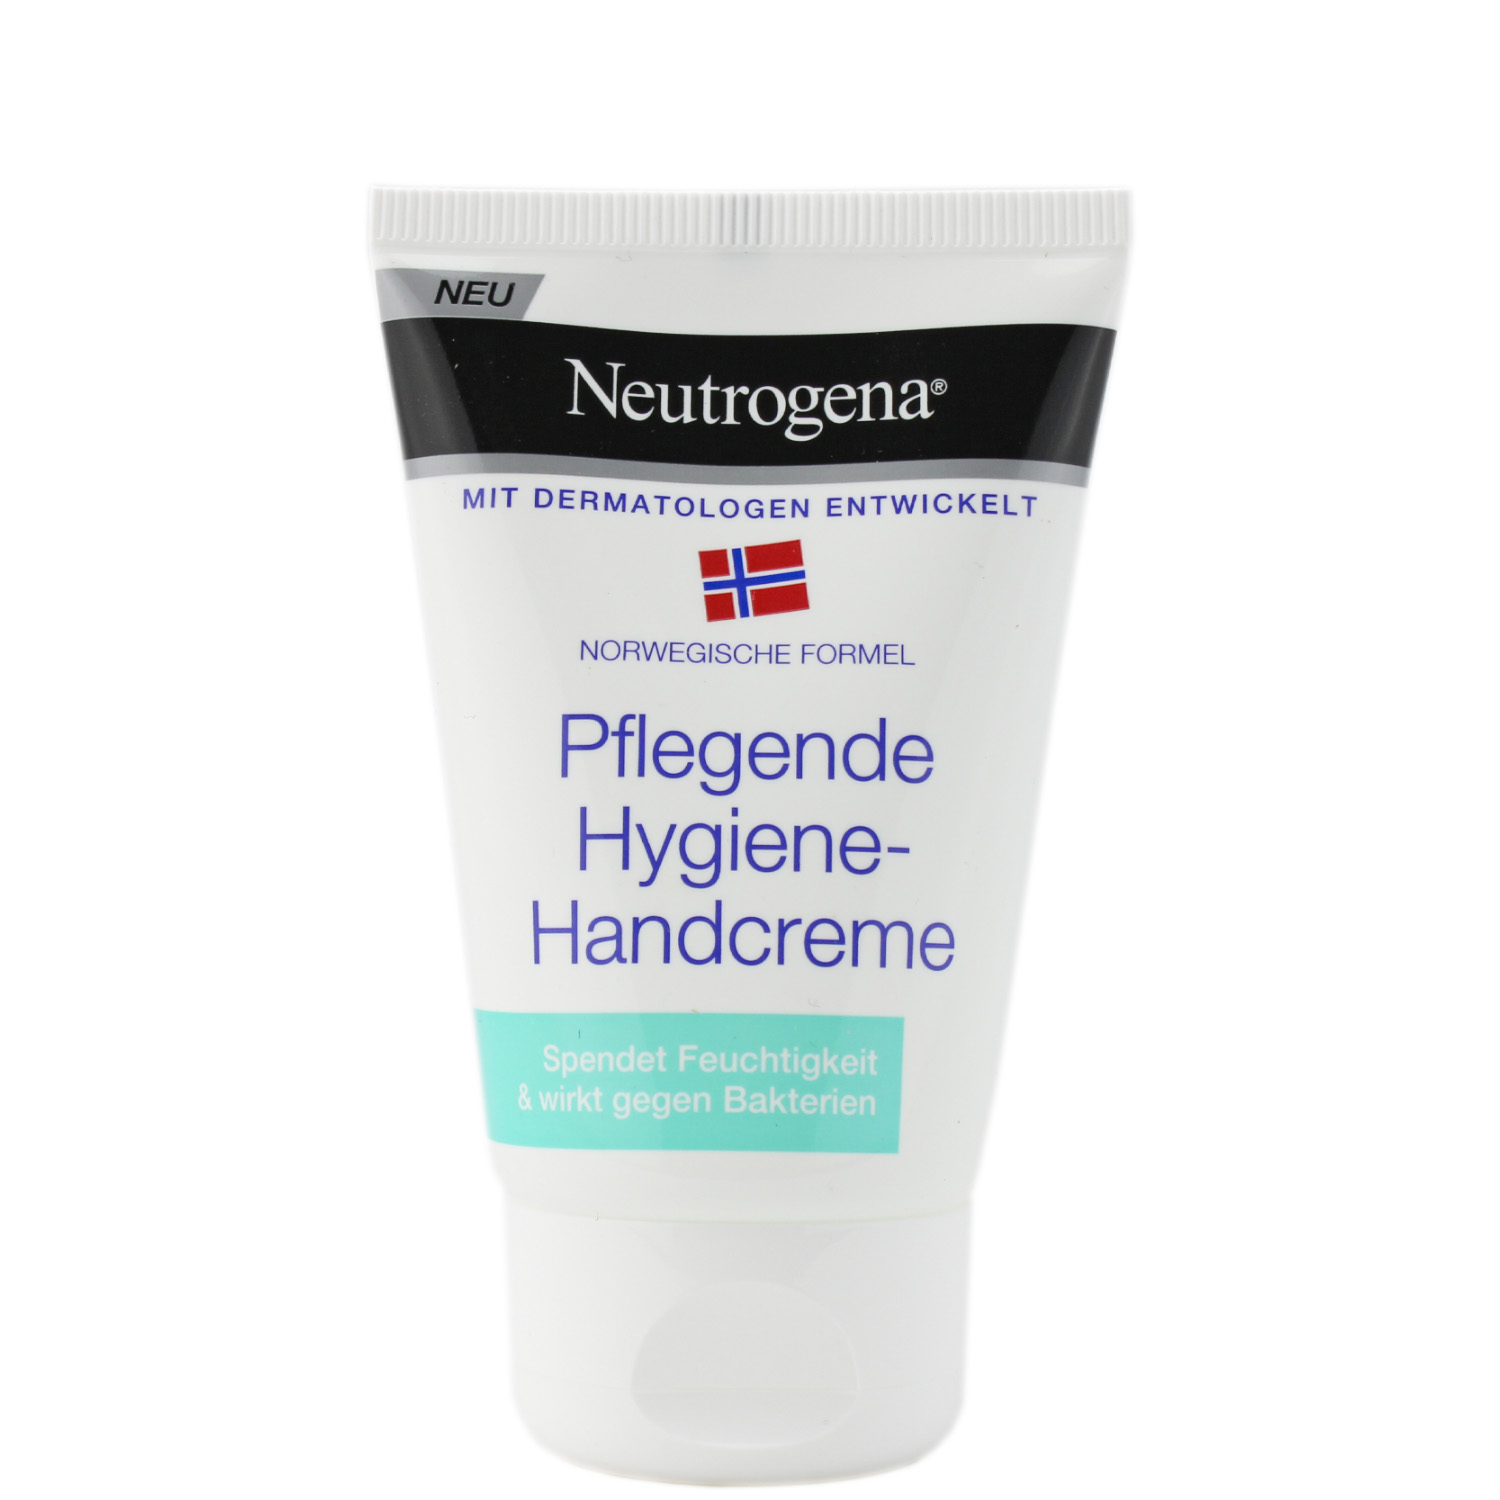 Neutrogena Pflegende Hygiene-Handcreme 50ml